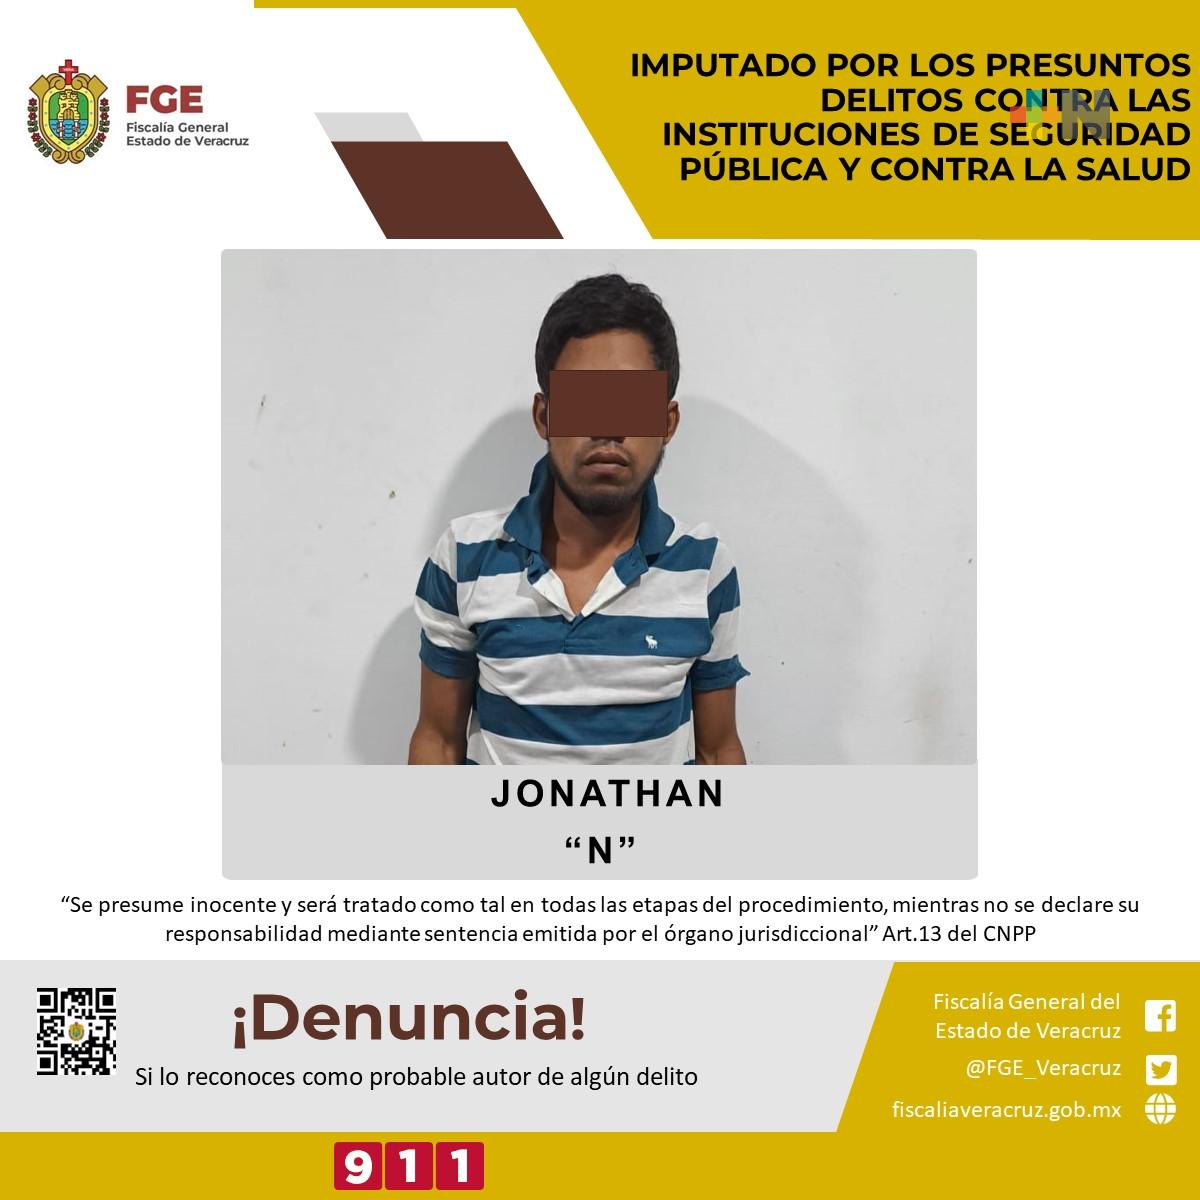 Imputado por presuntos delitos contra las instituciones de Seguridad Pública y contra la salud en Veracruz